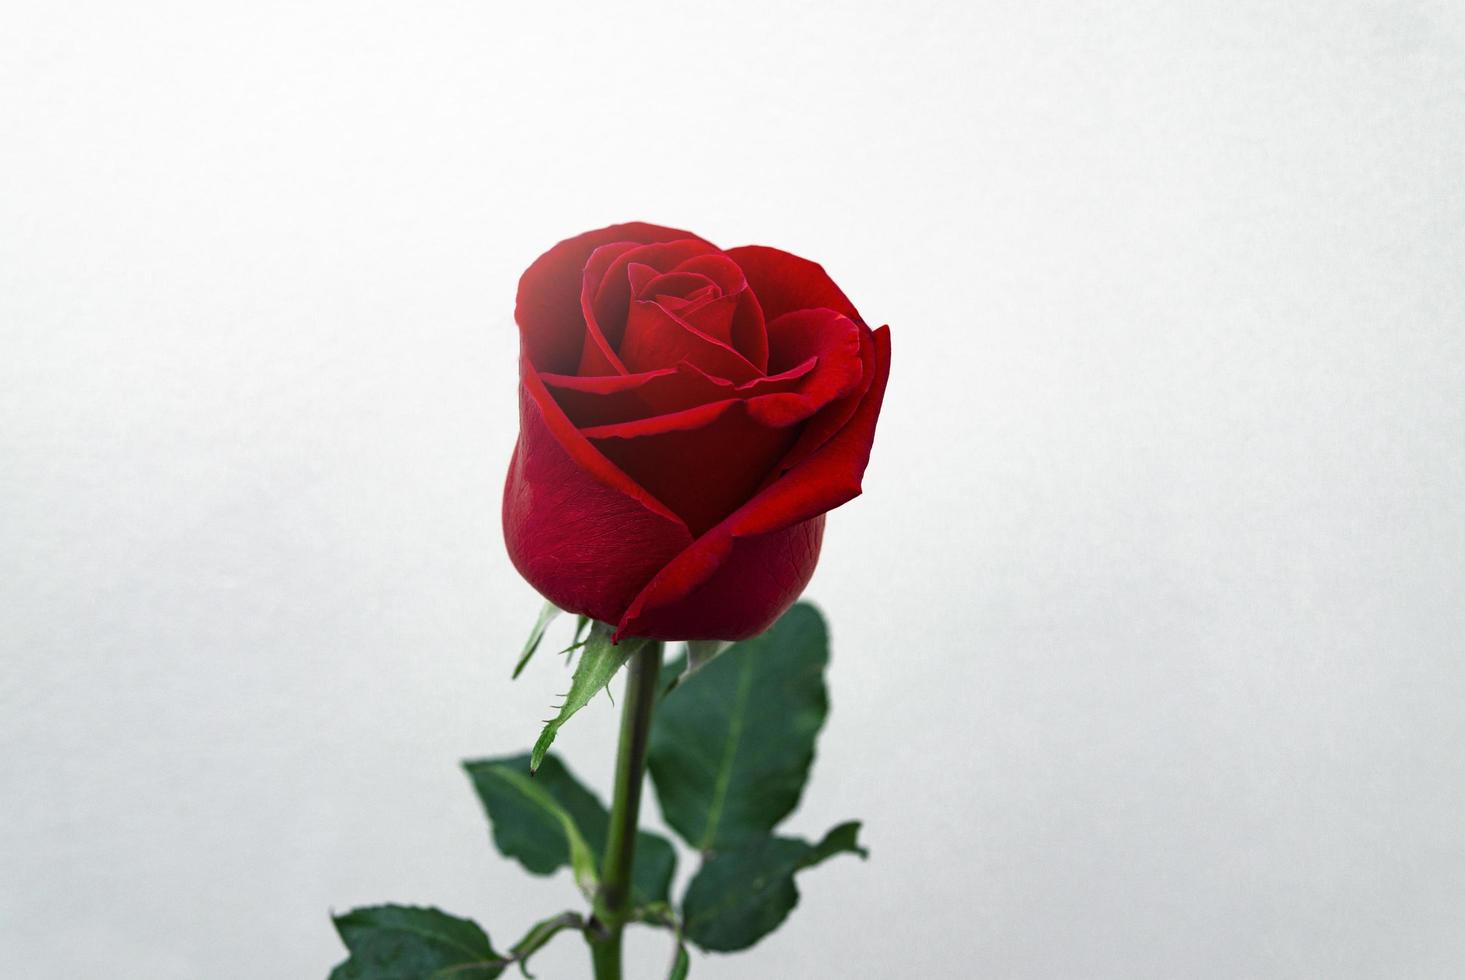 unica rosa rossa su sfondo bianco foto